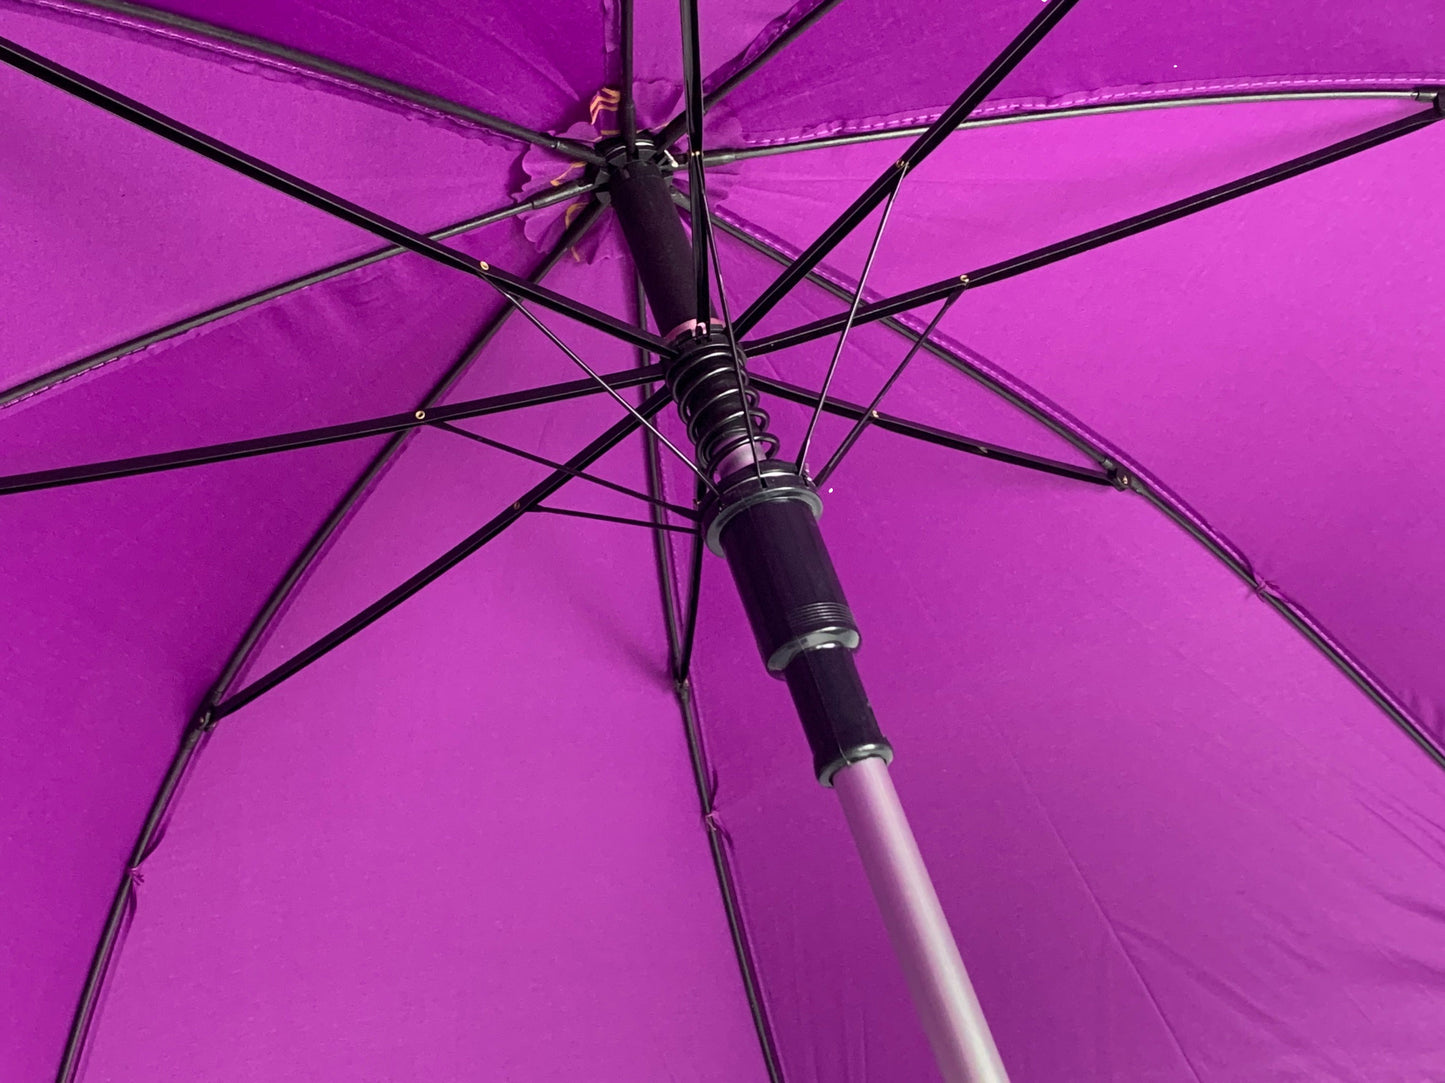 Μωβ ομπρέλα βροχής, συνοδείας, μακριά, με ιστό αλουμινίου.